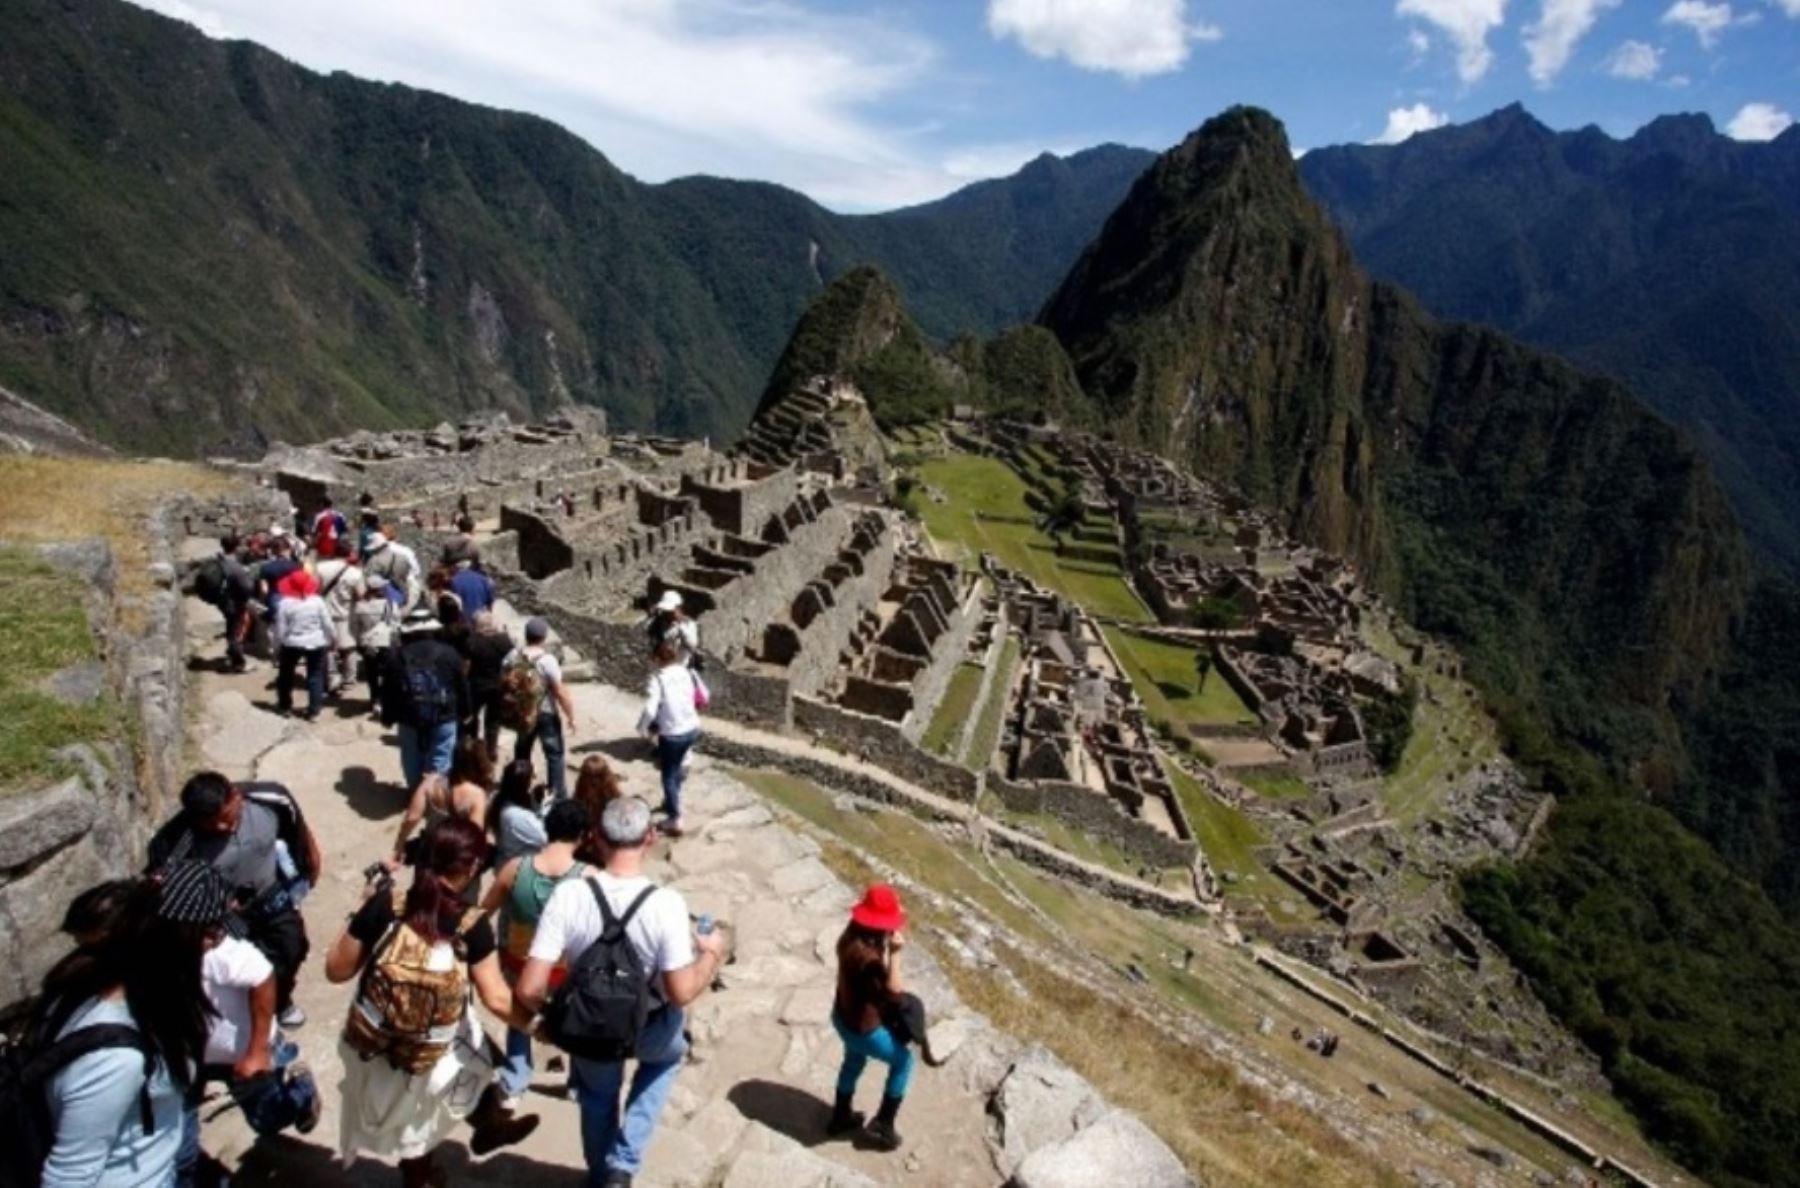 Ordenarán ingreso de turistas a Machu Picchu desde enero del 2019